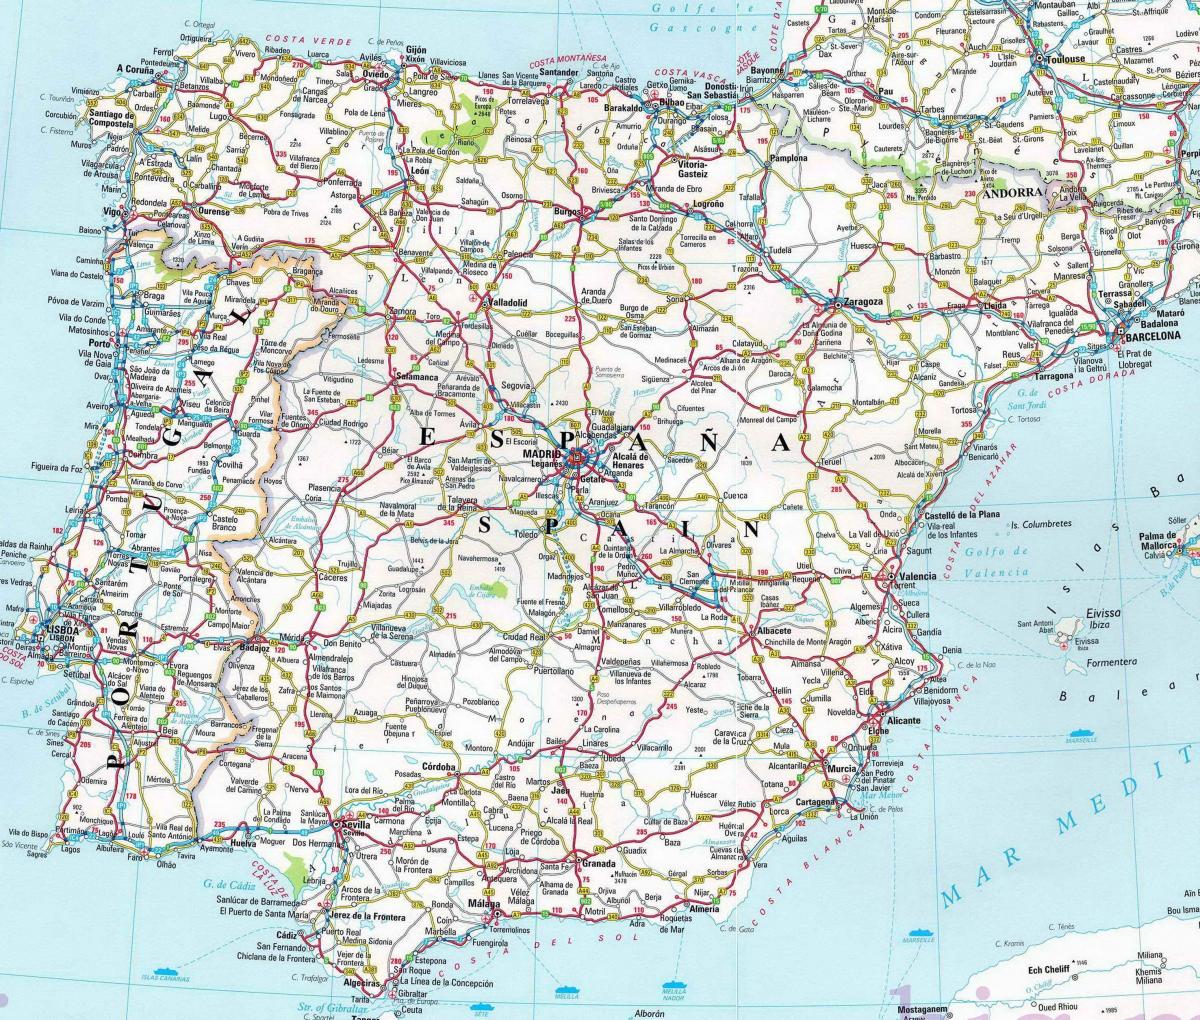 Mappa grande di Spagna